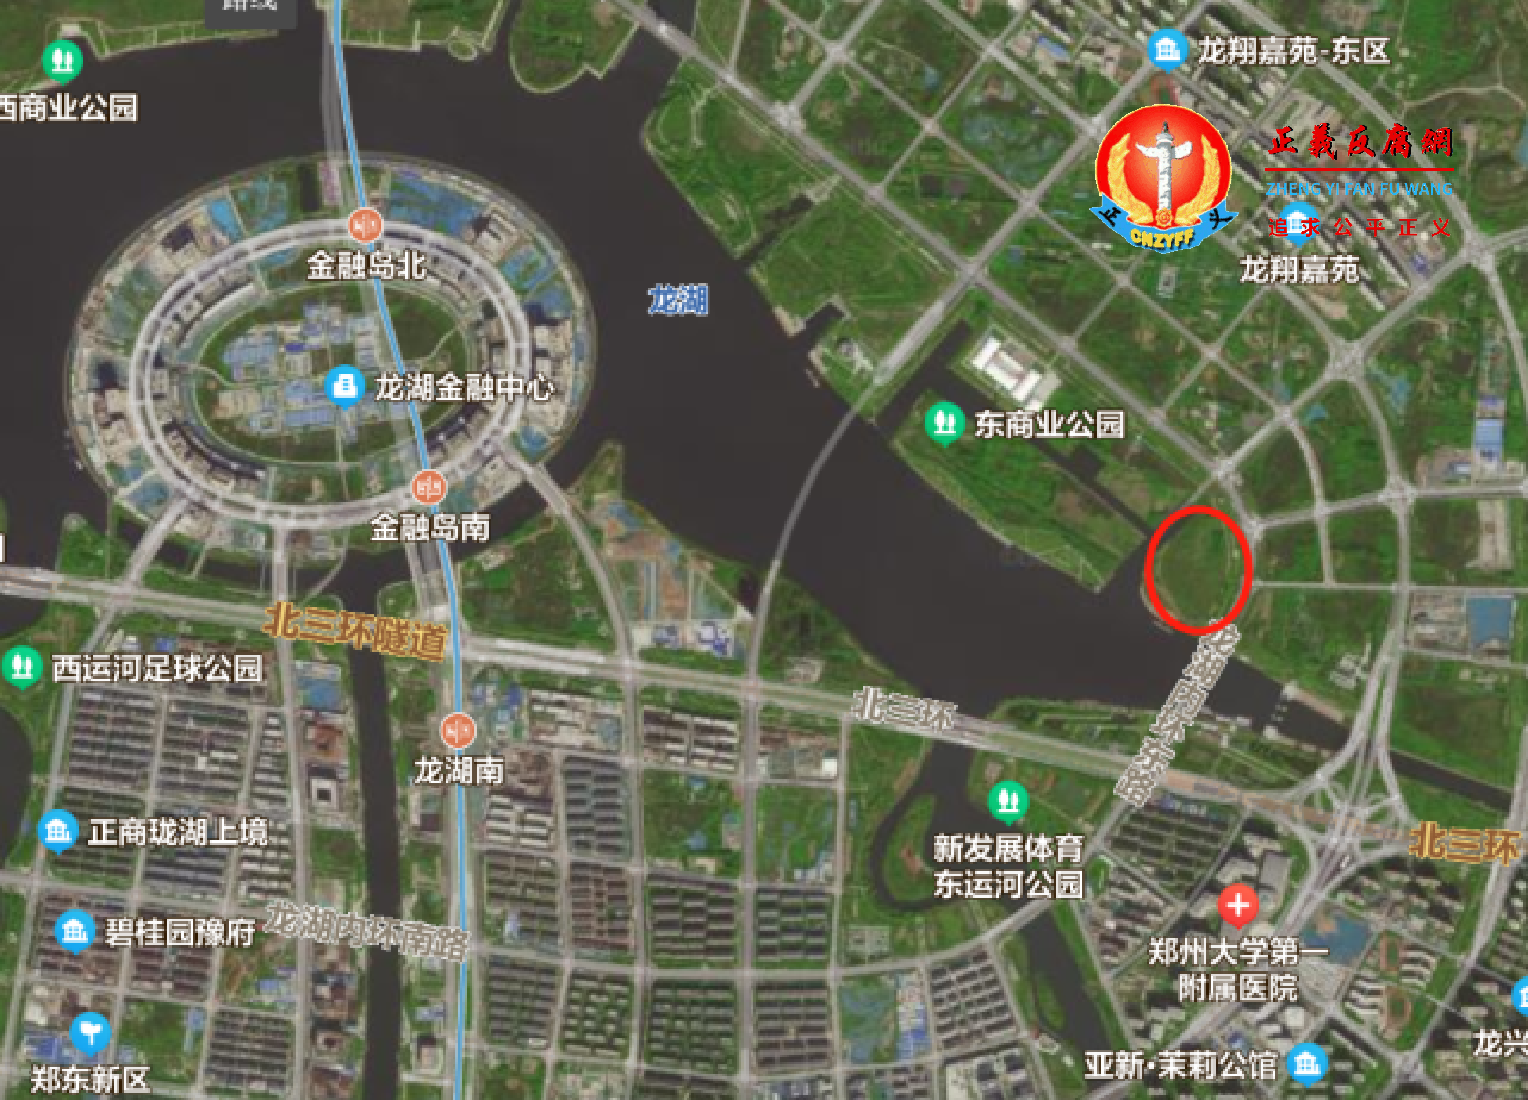 红圈是该宗挂牌出让地块位置育翔路南、龙湖内环东路西对面就是有“郑州陆家嘴”之称的龙湖金融岛。.png